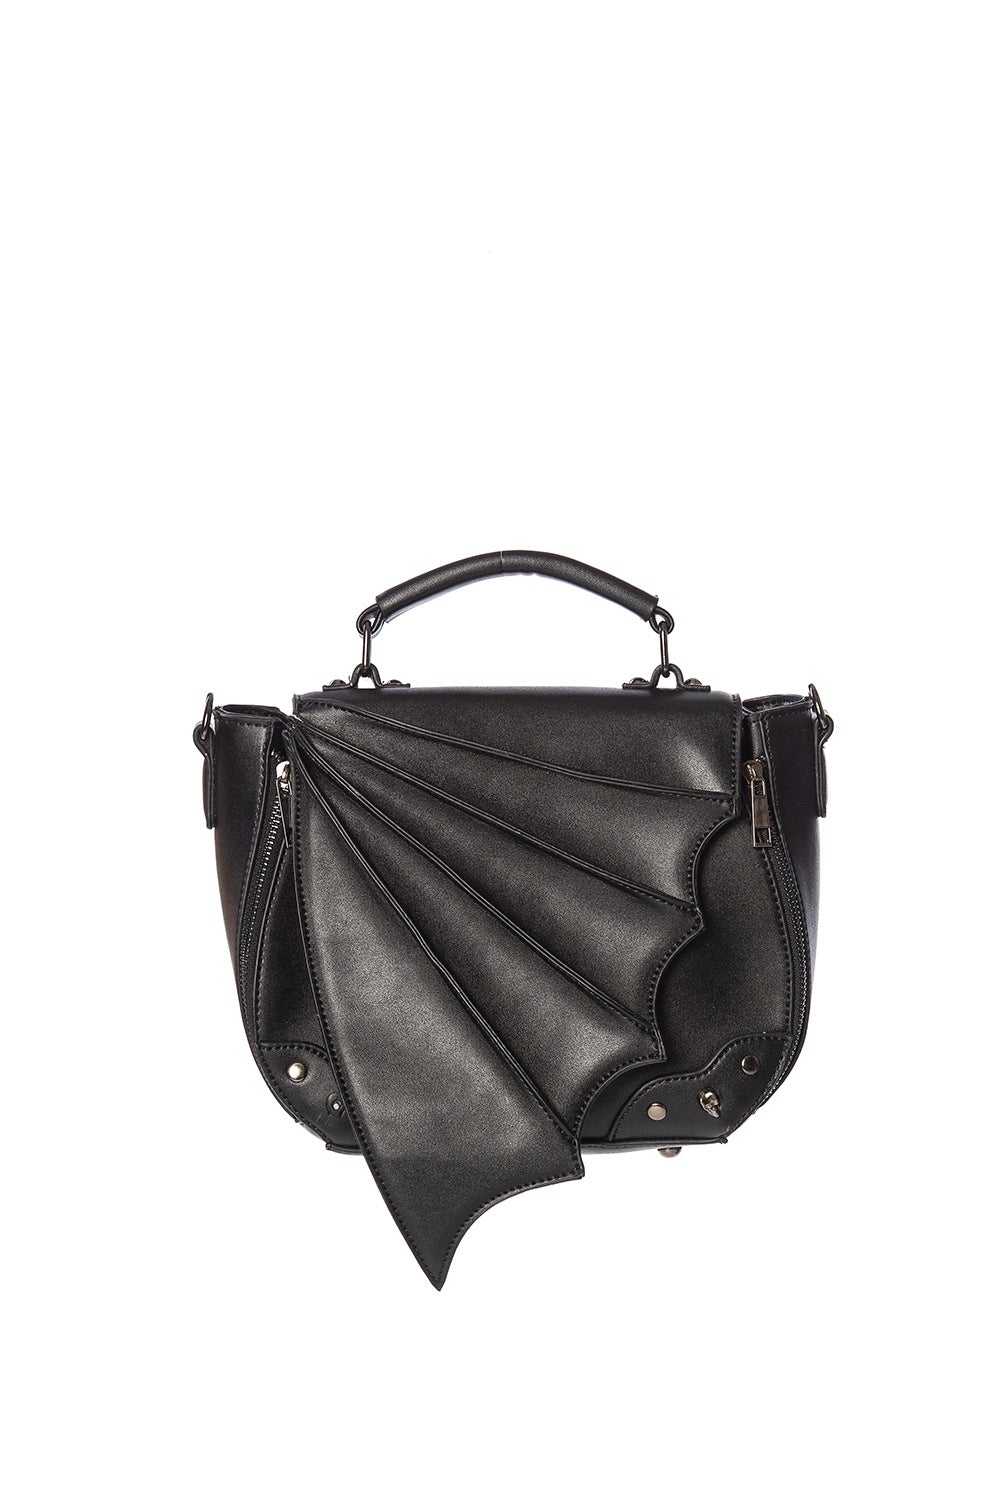 Banned Alternative Gwendolyn Batwing Handbag